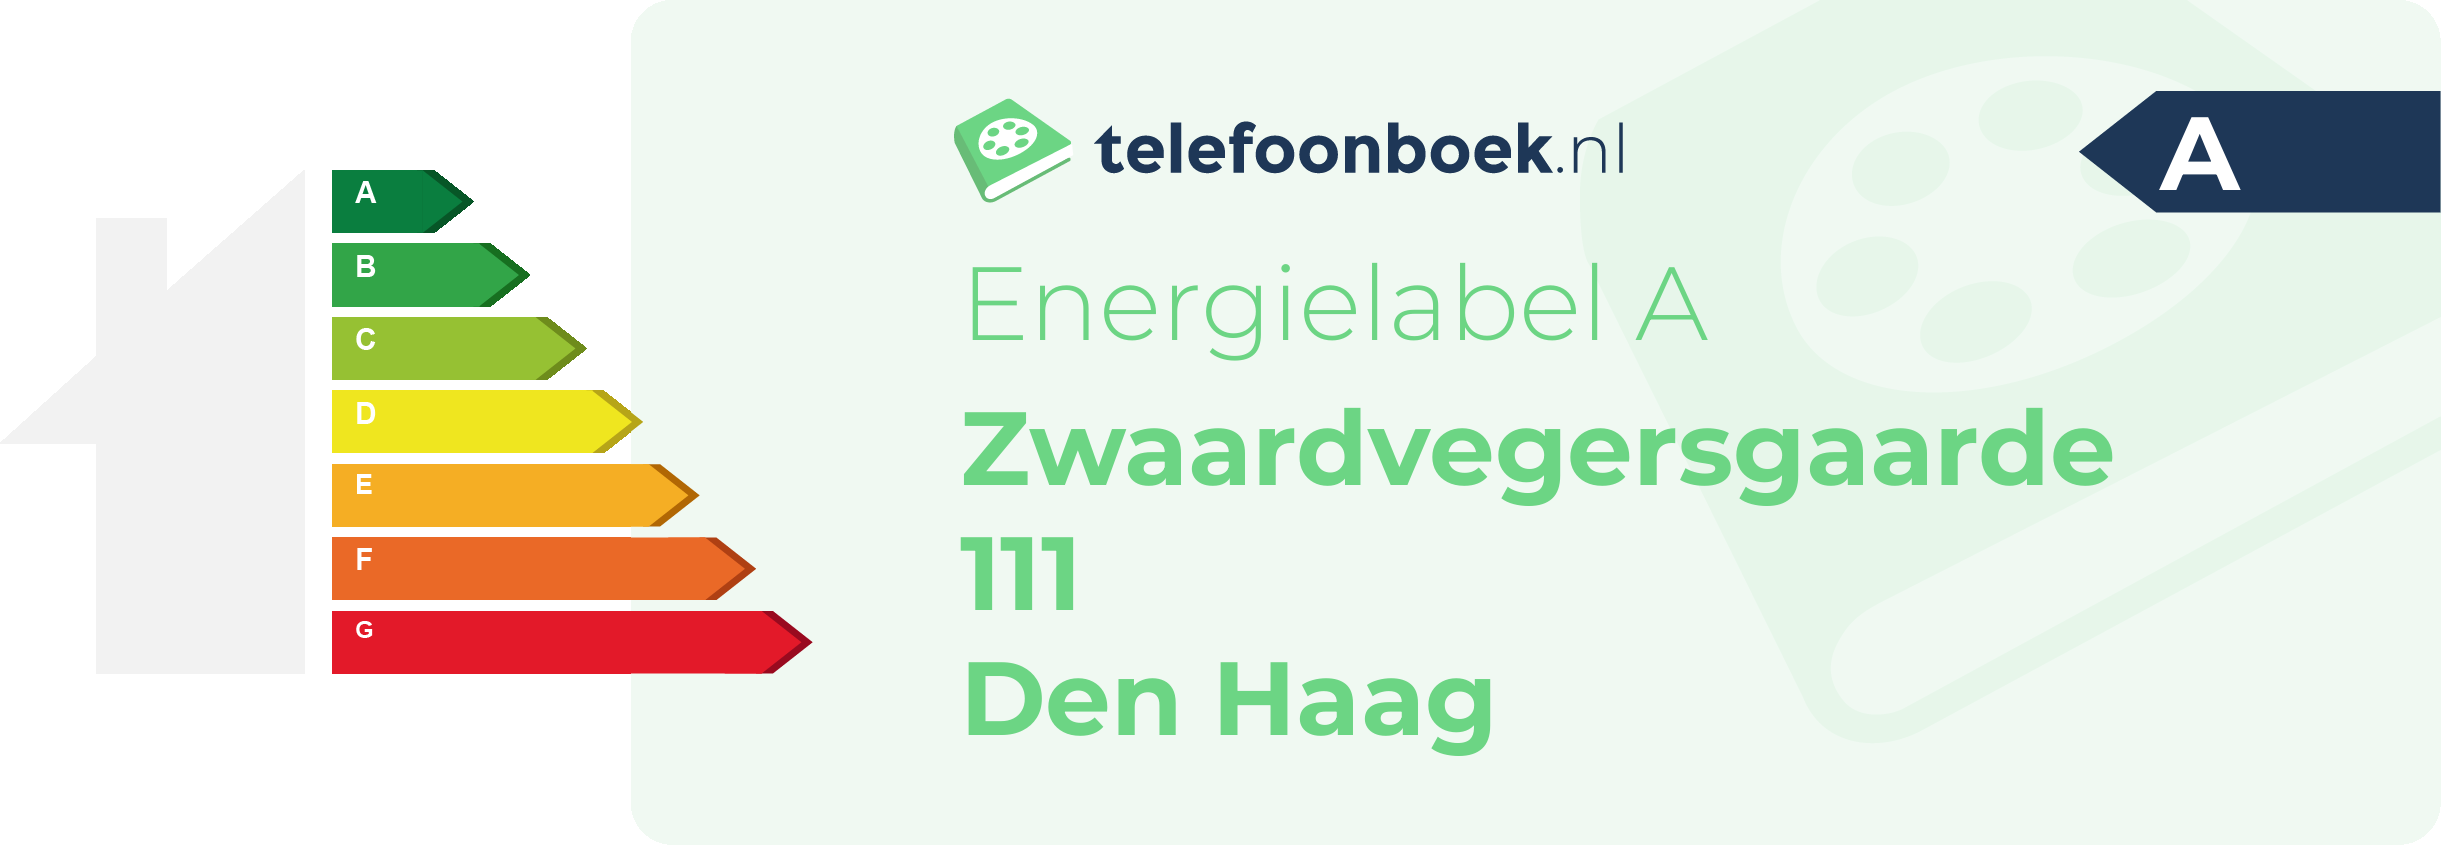 Energielabel Zwaardvegersgaarde 111 Den Haag